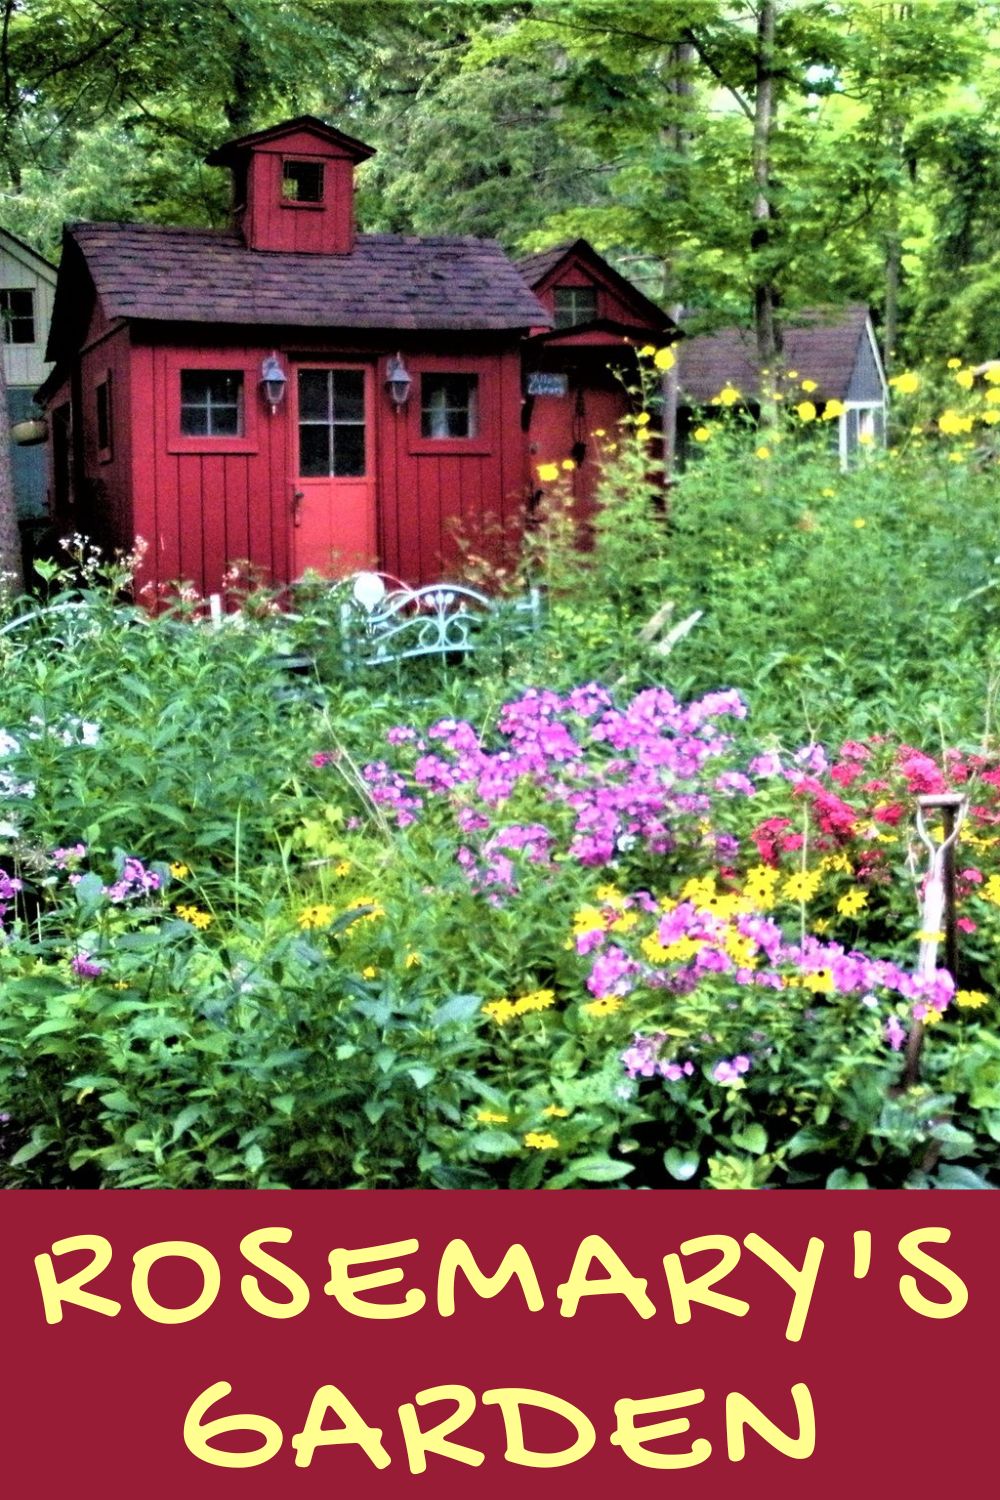 Rosemary's Cottage Garden